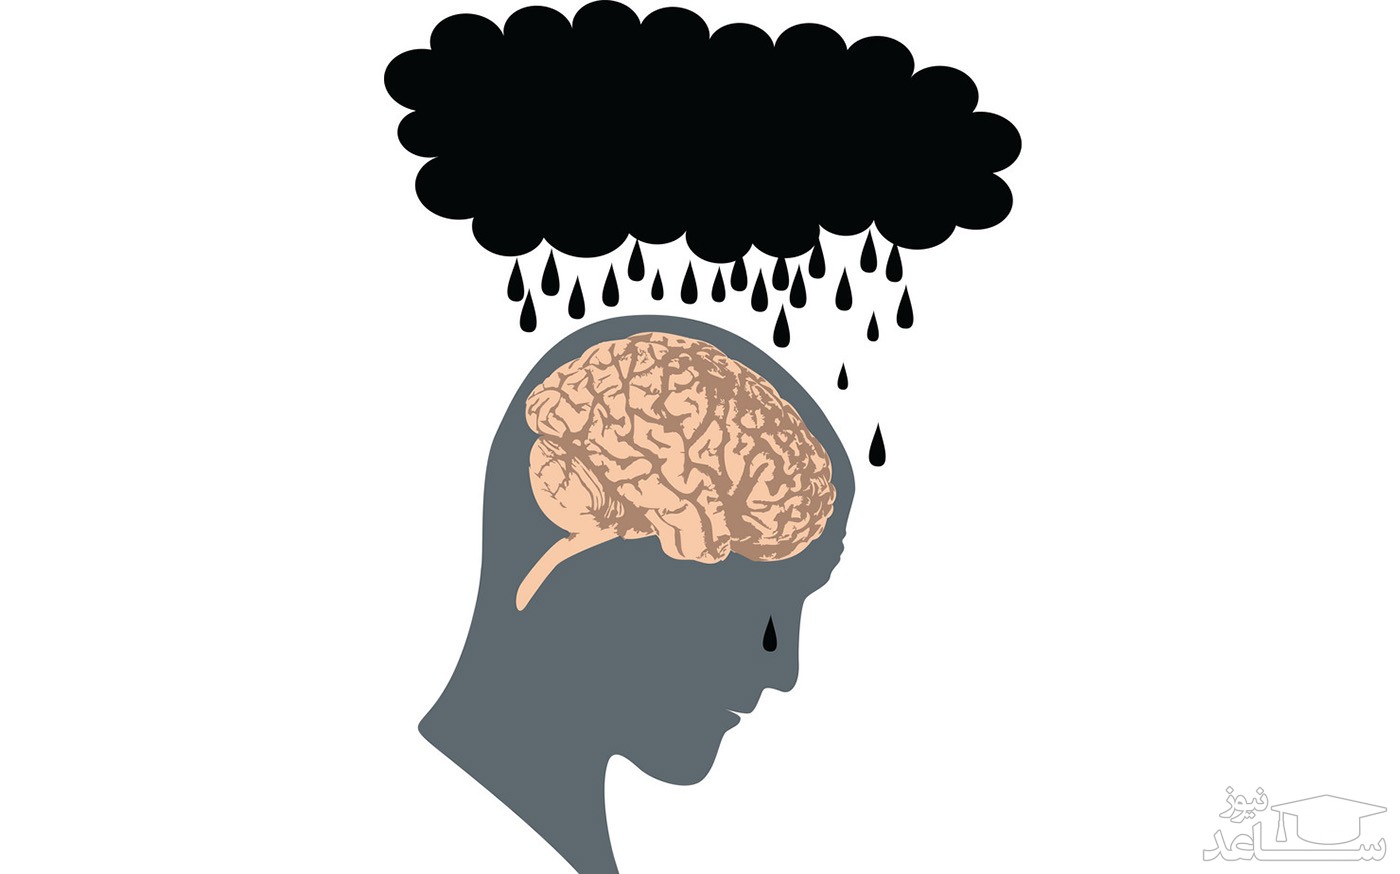 تست روانشناسی تصویری برای تشخیص میزان افسردگی